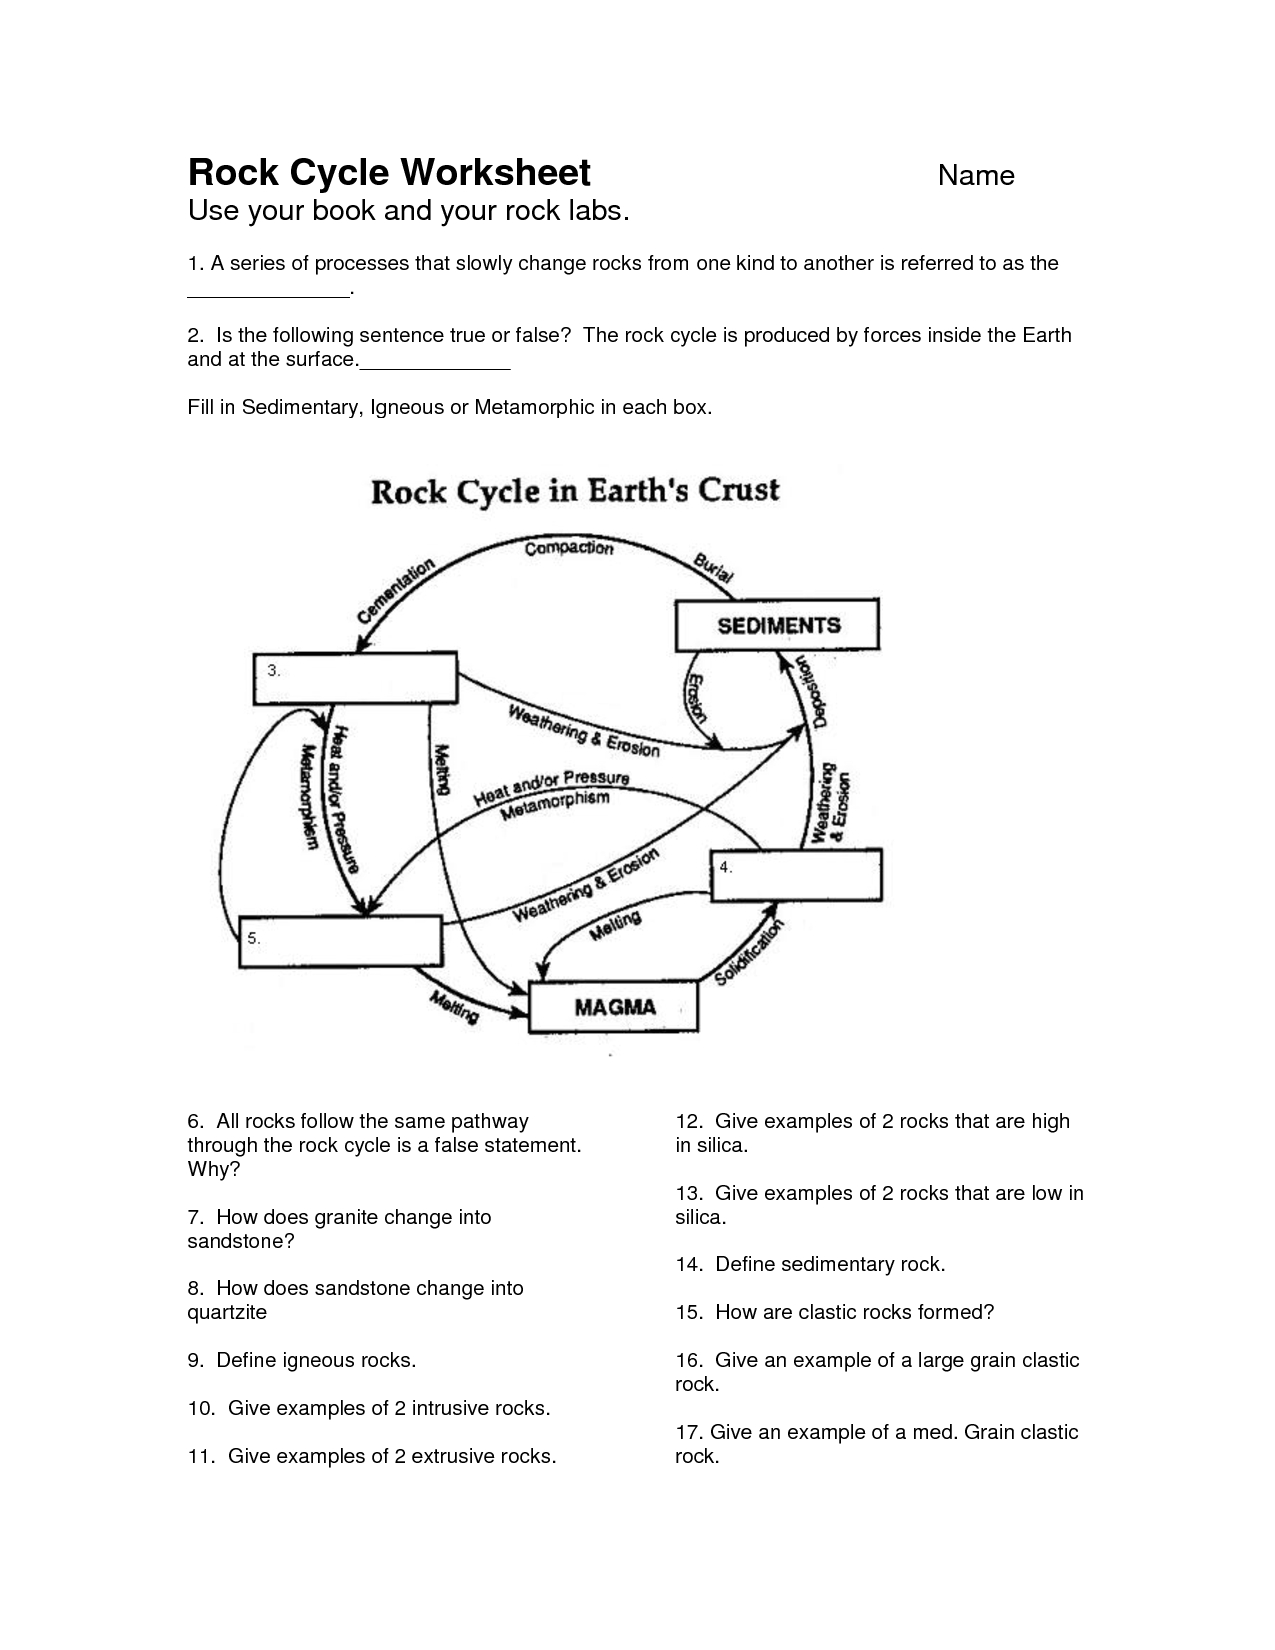 Rock Cycle Worksheet - Google Search | School | Pinterest - Rock Cycle Worksheets Free Printable